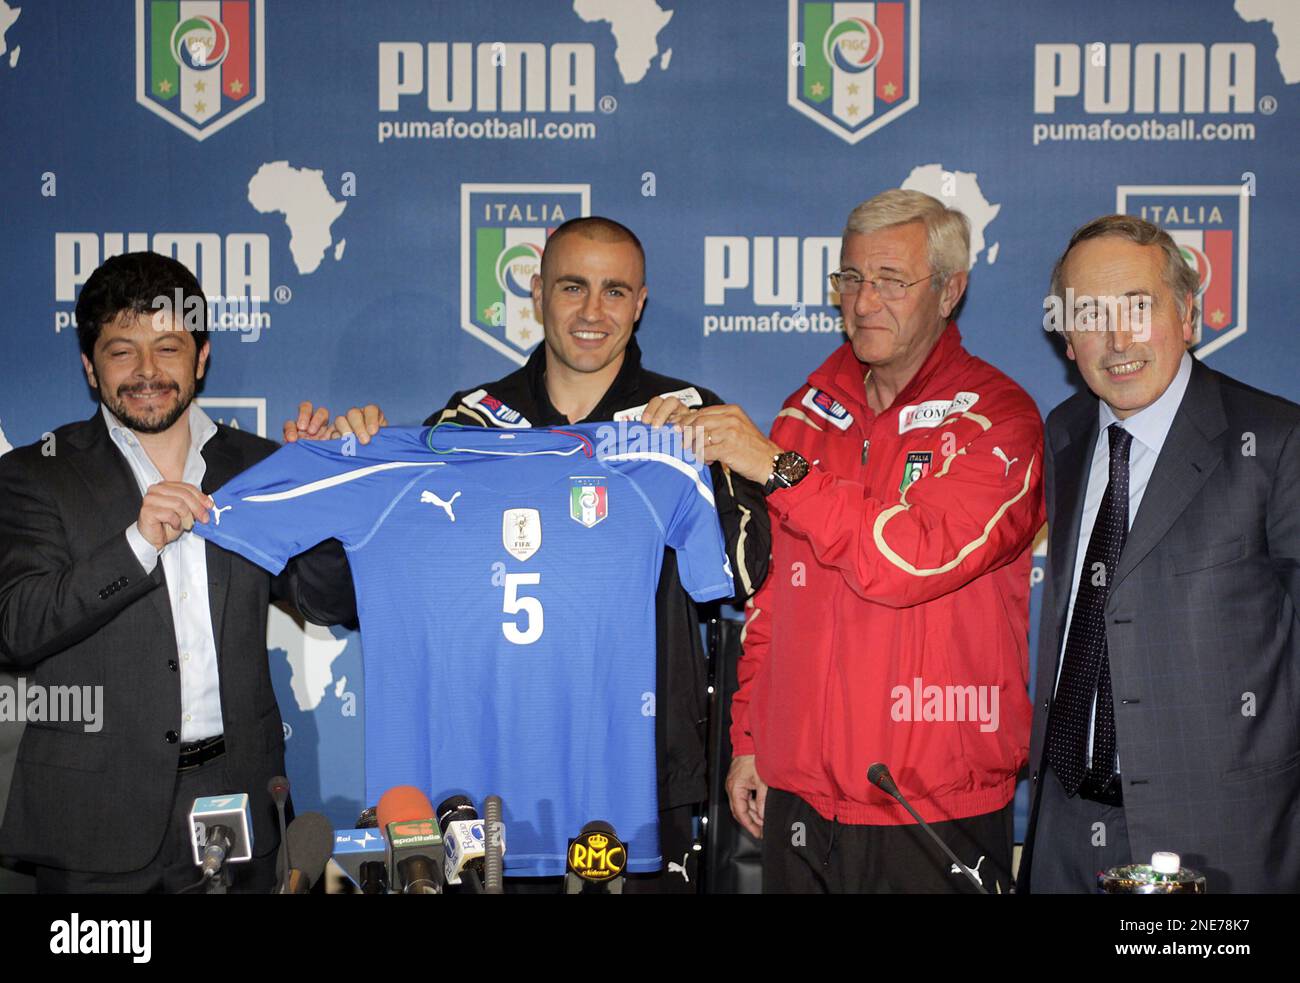 Football teams shirt and kits fan: Italy WC 2006 GK kits